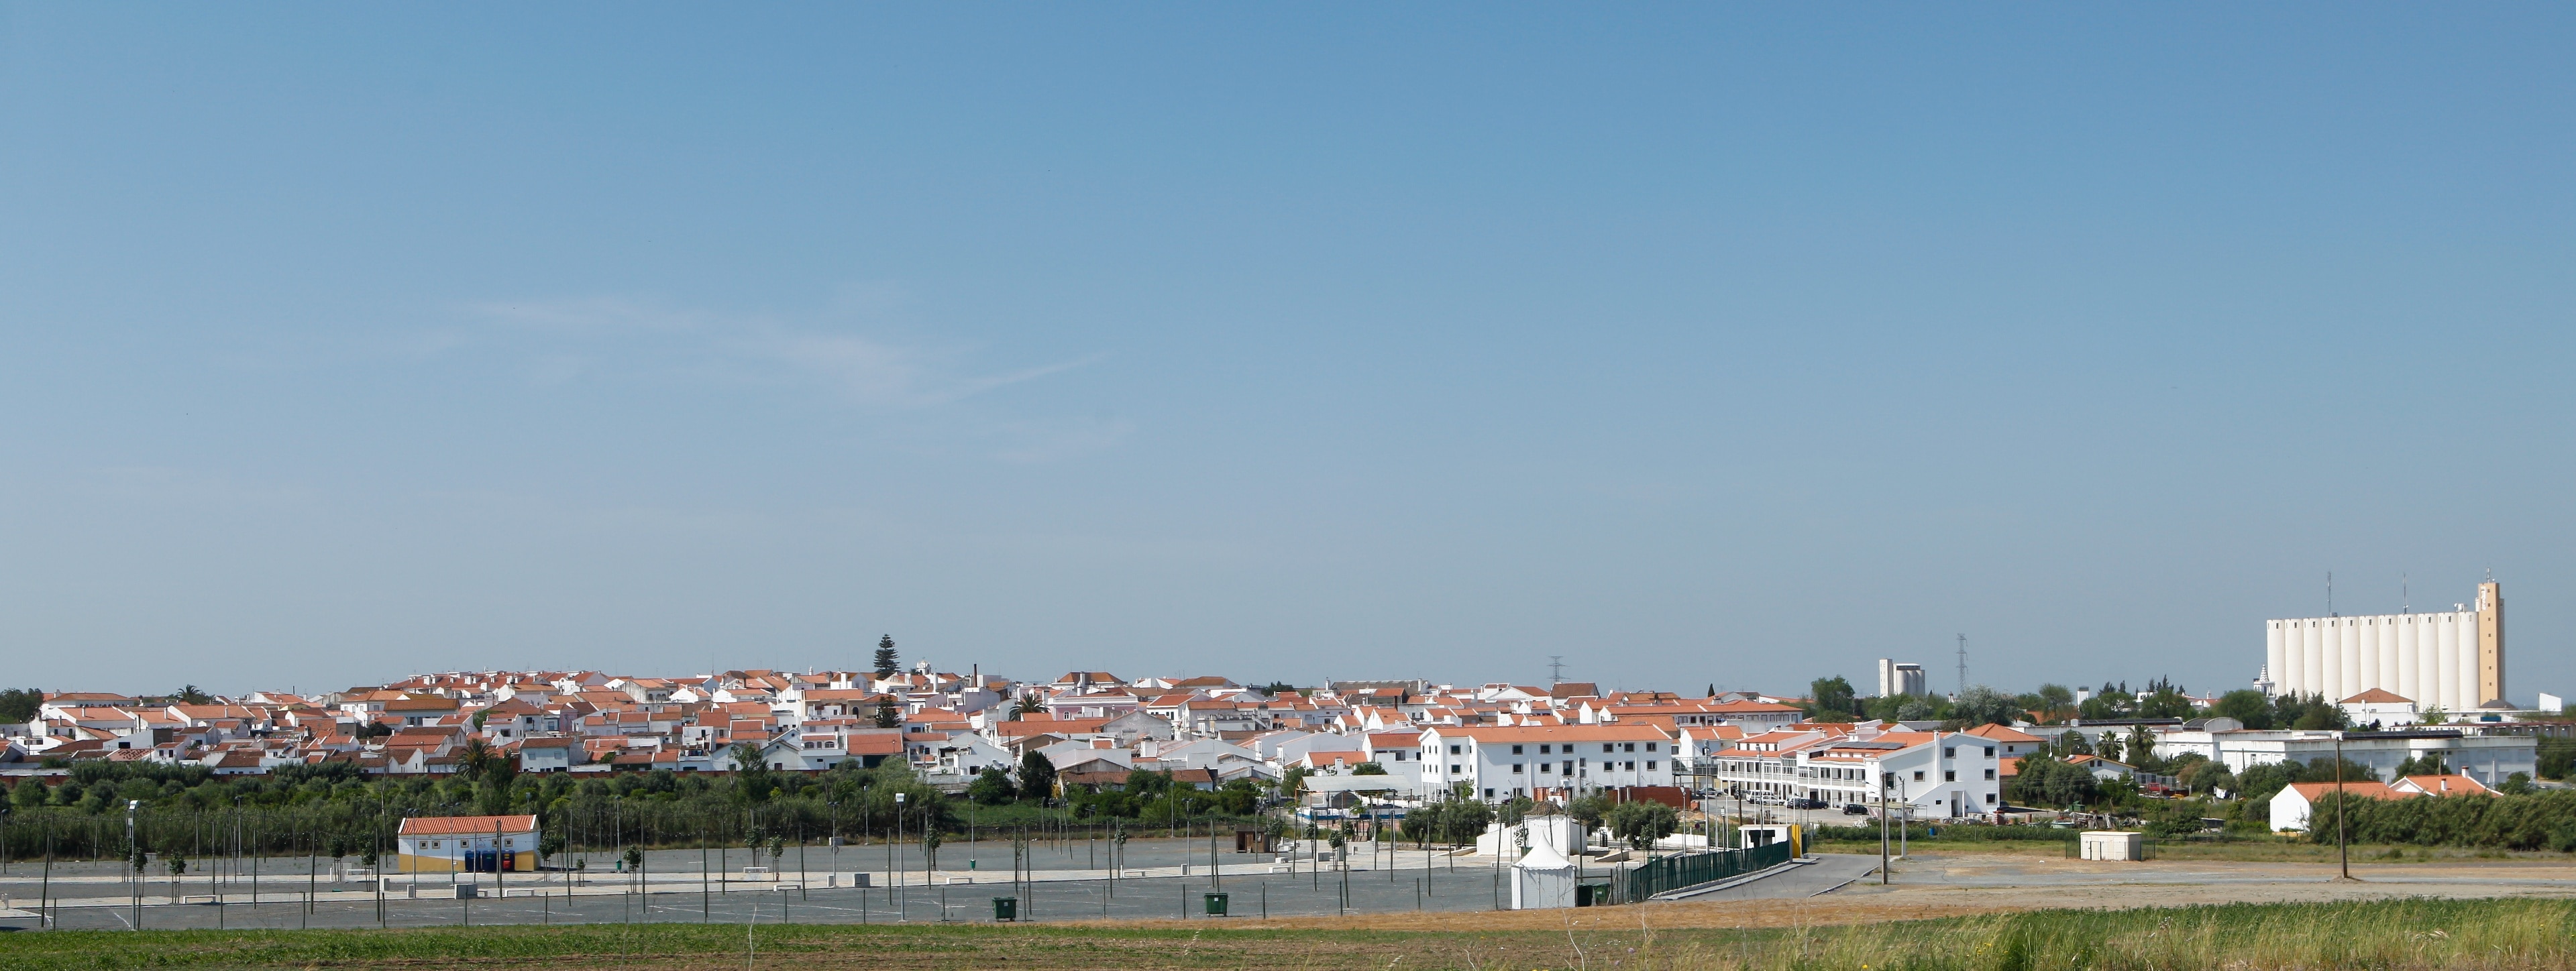 District de Beja, Portugal